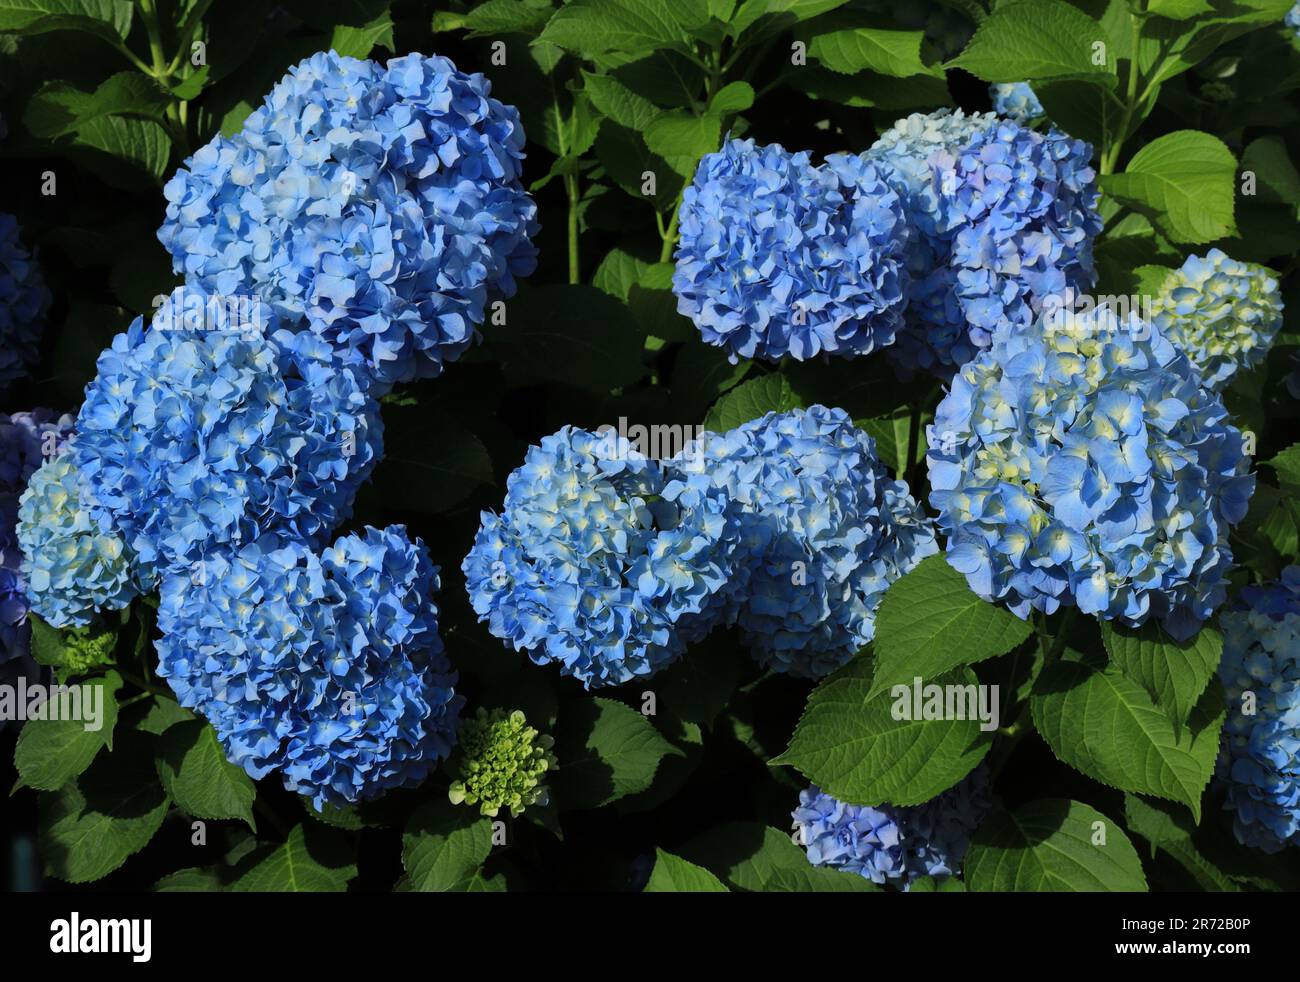 Hydrangea blu o Hortensia - Hydrangea macrophylla cespuglio in fiore, Sintra, Lisbona Portogallo. Primavera. Introdotto dalle isole Azzorre portoghesi. Foto Stock